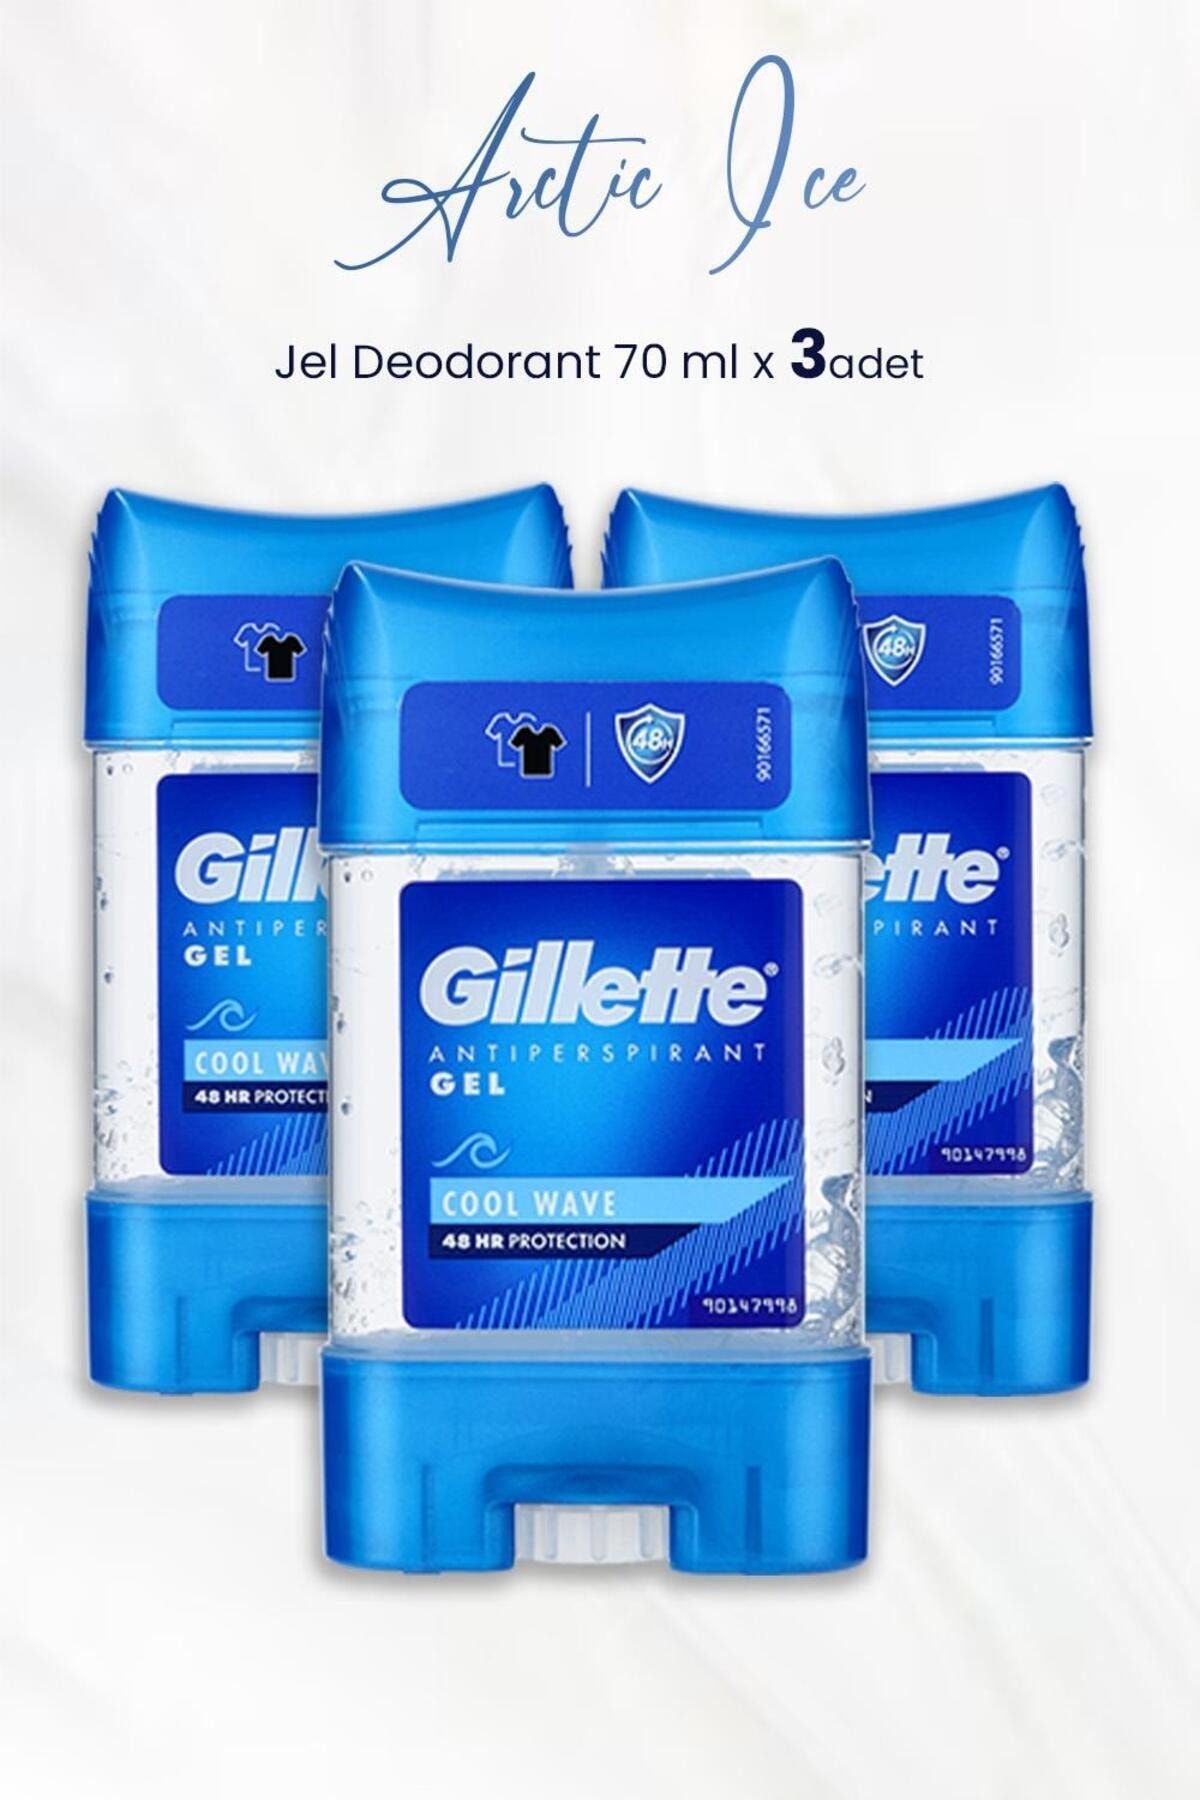 Gillette Antiperspirant Gel Cool Wave 70 ml x 3 Adet